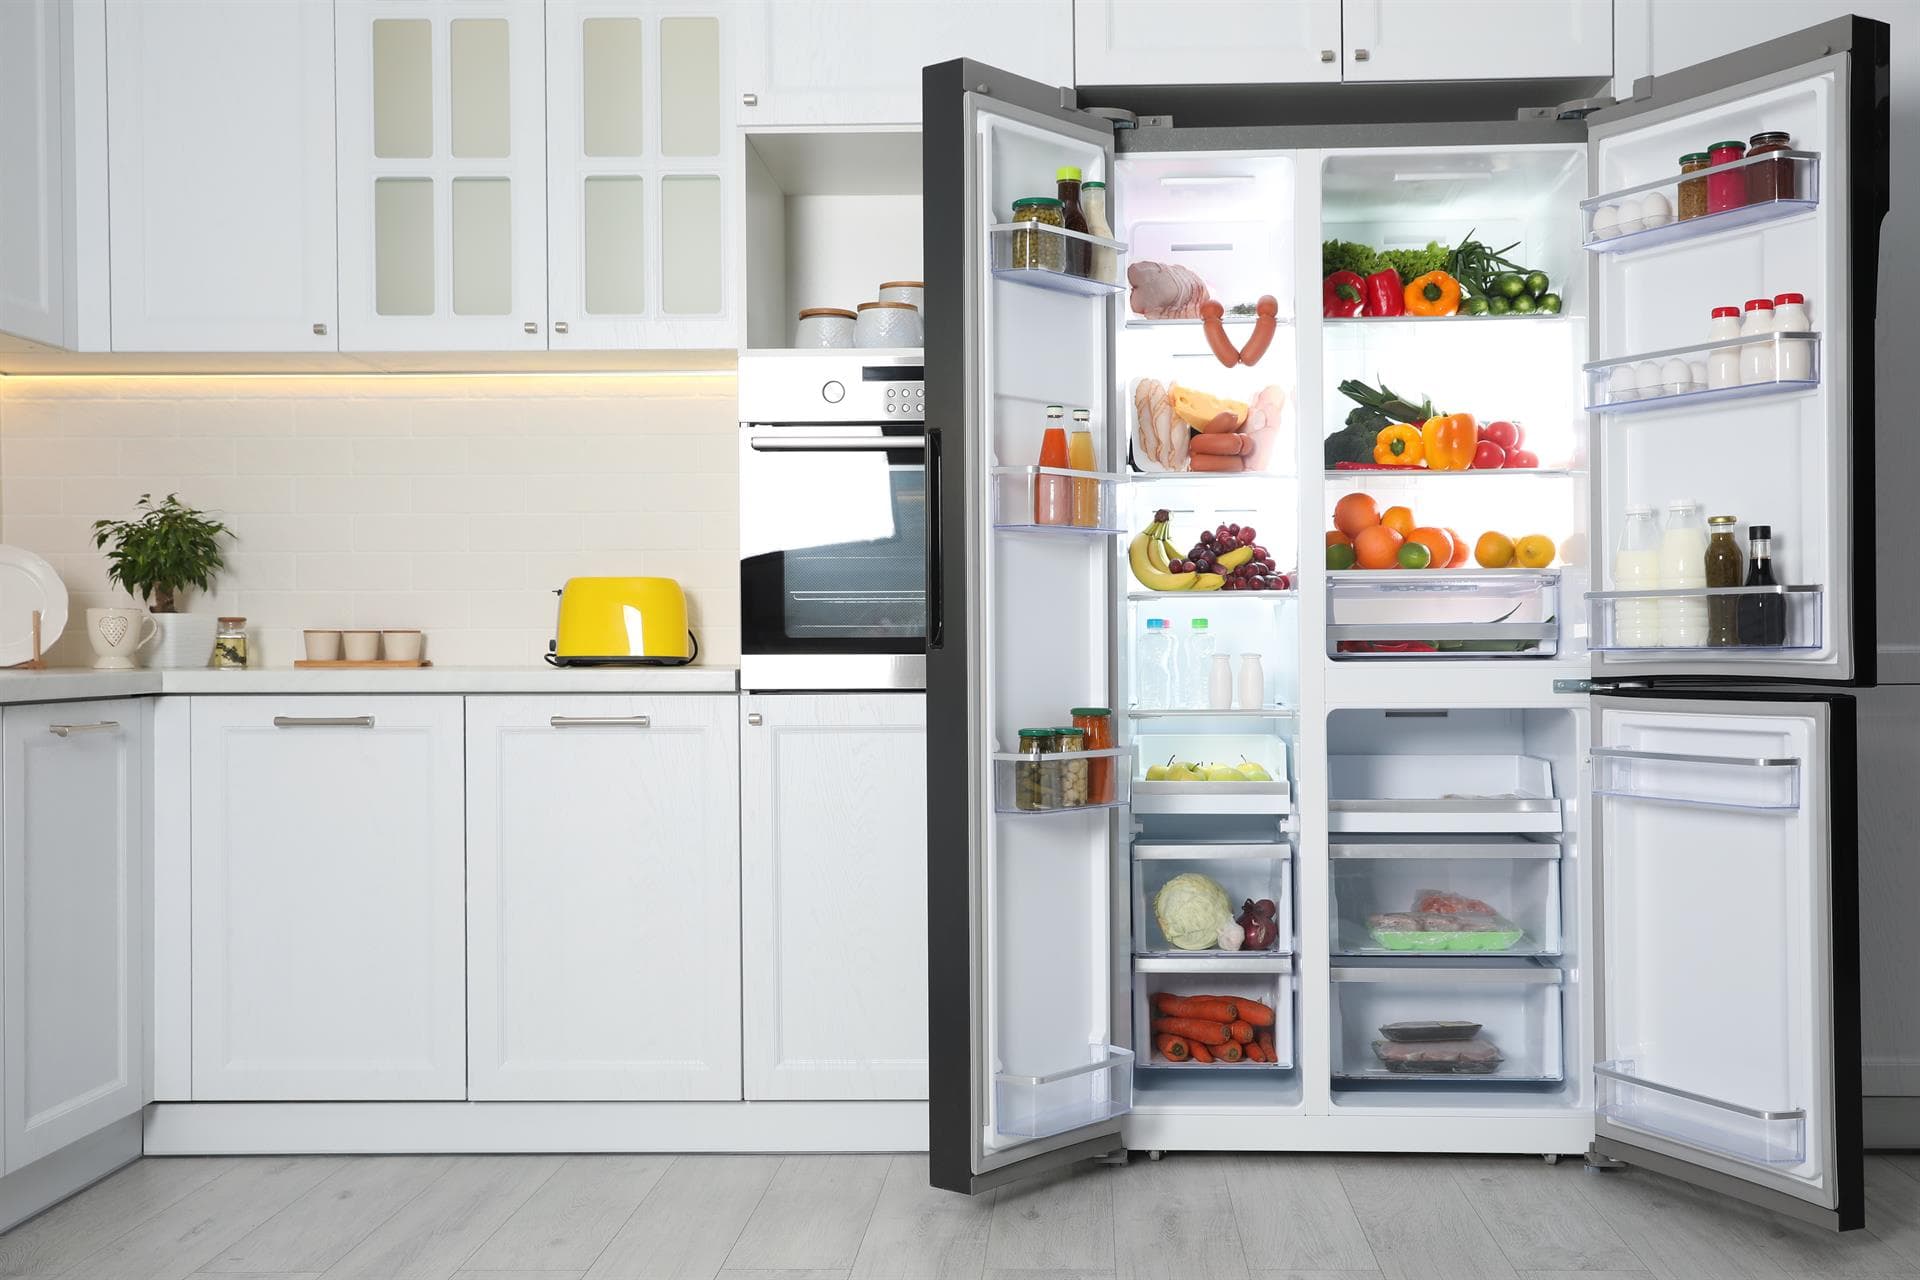 ¿Necesitas renovar tu frigorífico o congelador? Encuéntralo al mejor precio